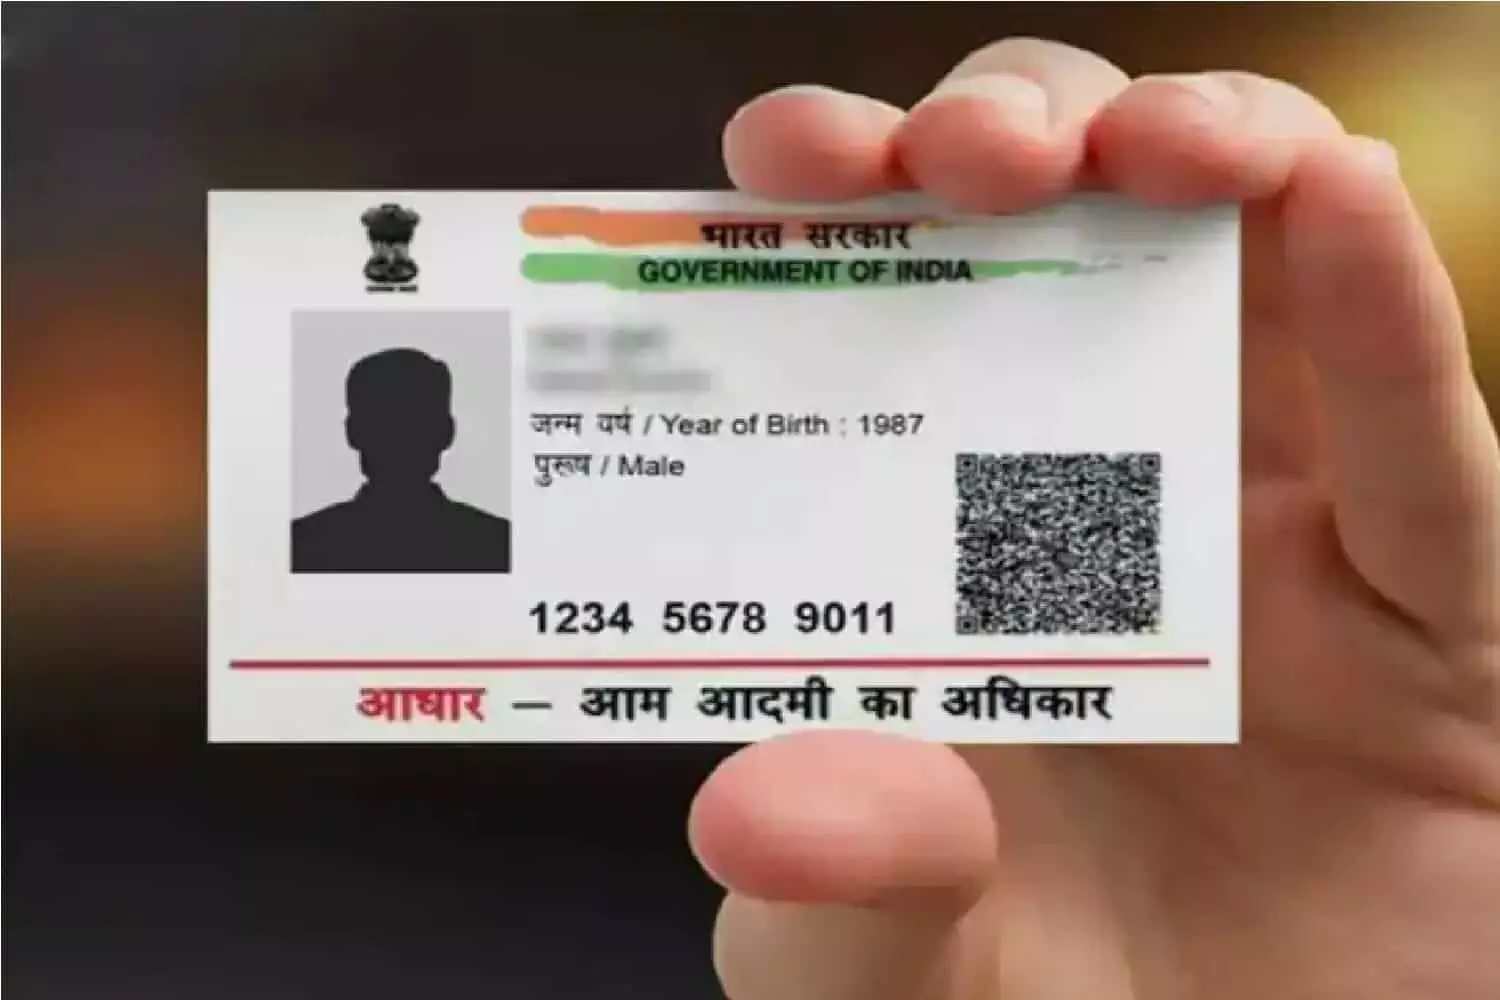 Aadhaar Card: आधार कार्ड को लेकर बड़ा ऐलान, 138 करोड़ जनता के लिए बेहद जरूरी खबर